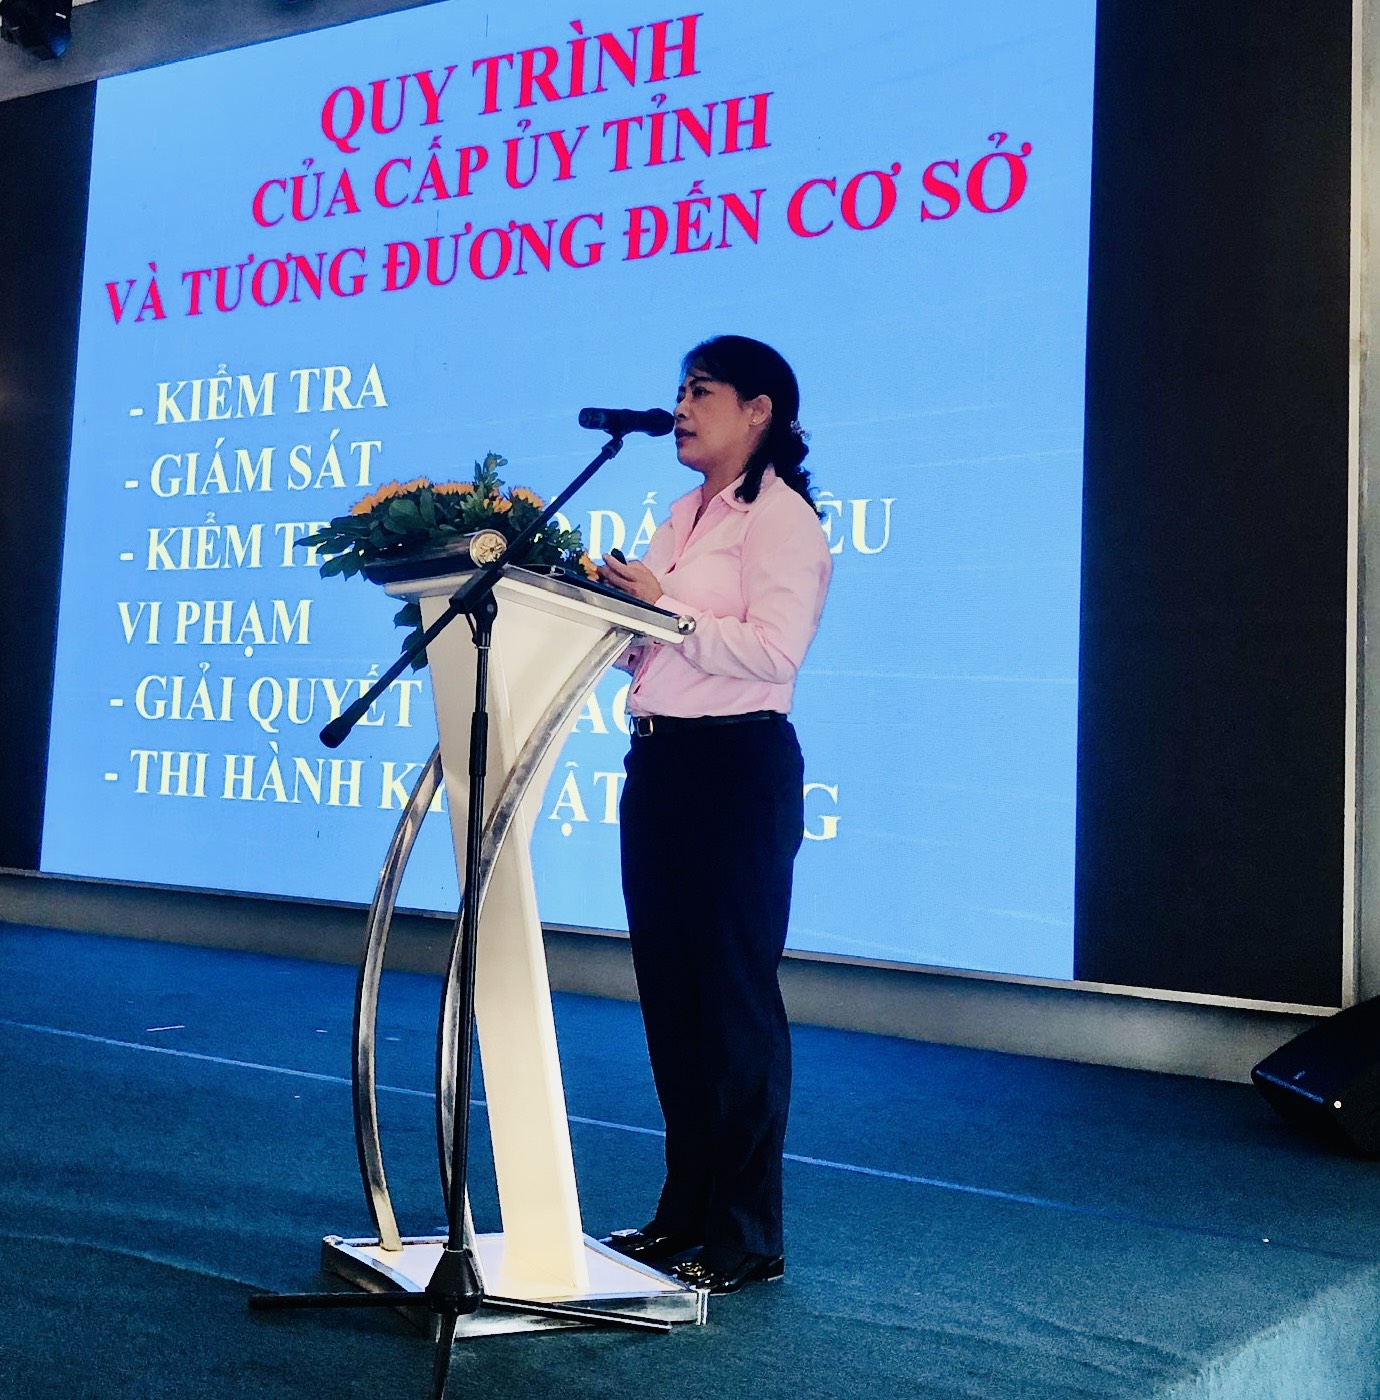 Đồng chí Nguyễn Thị Phương Mai - Phó Chủ nhiệm Ủy ban Kiểm tra Thành ủy TP. Hồ Chí Minh báo cáo tại lớp bồi dưỡng.